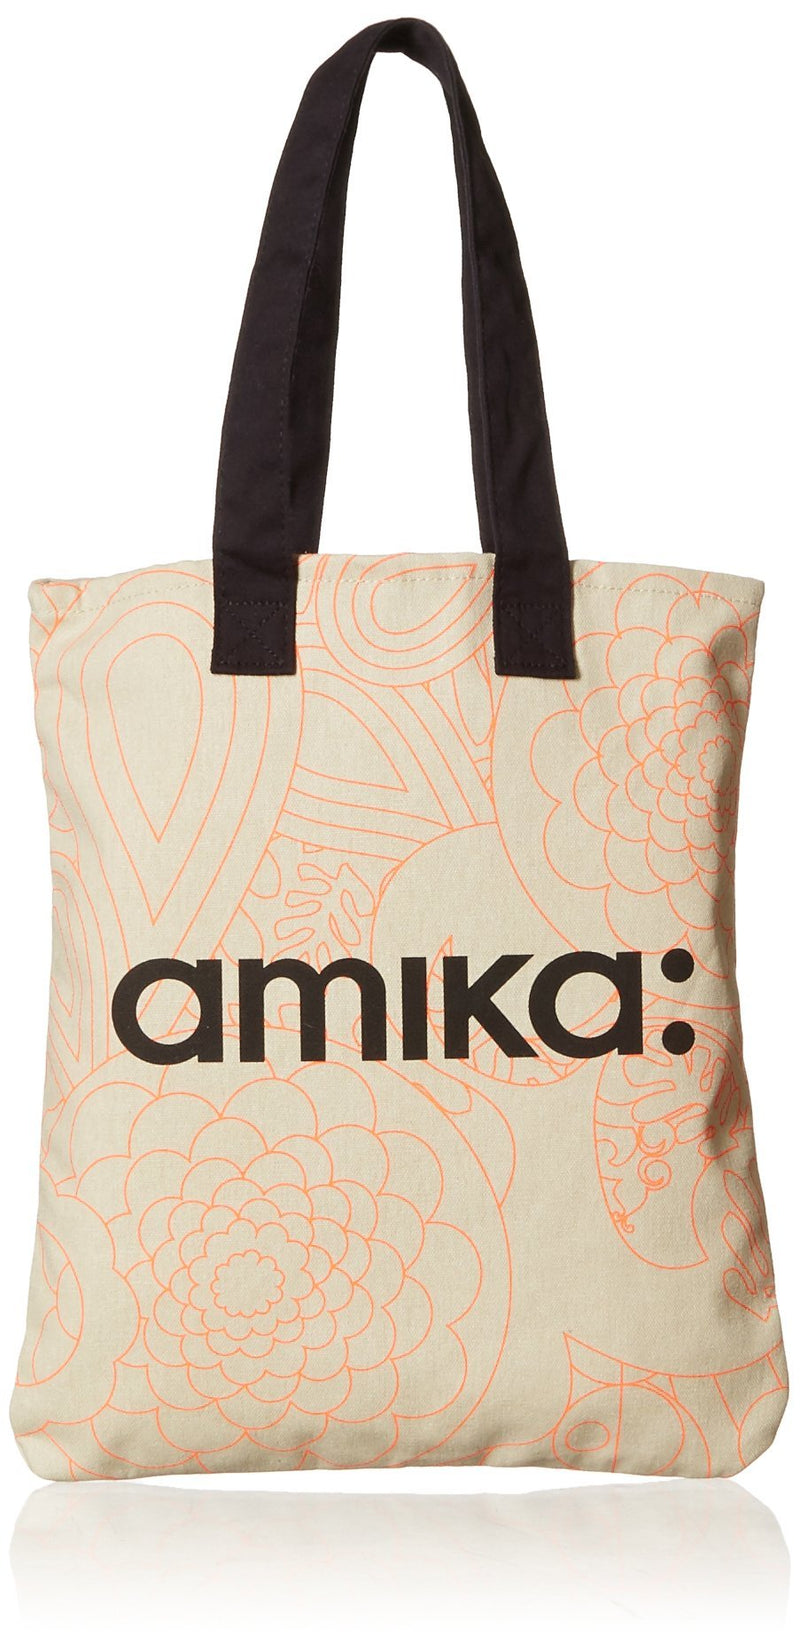 [Australia] - amika Tote Bag Obliphica 